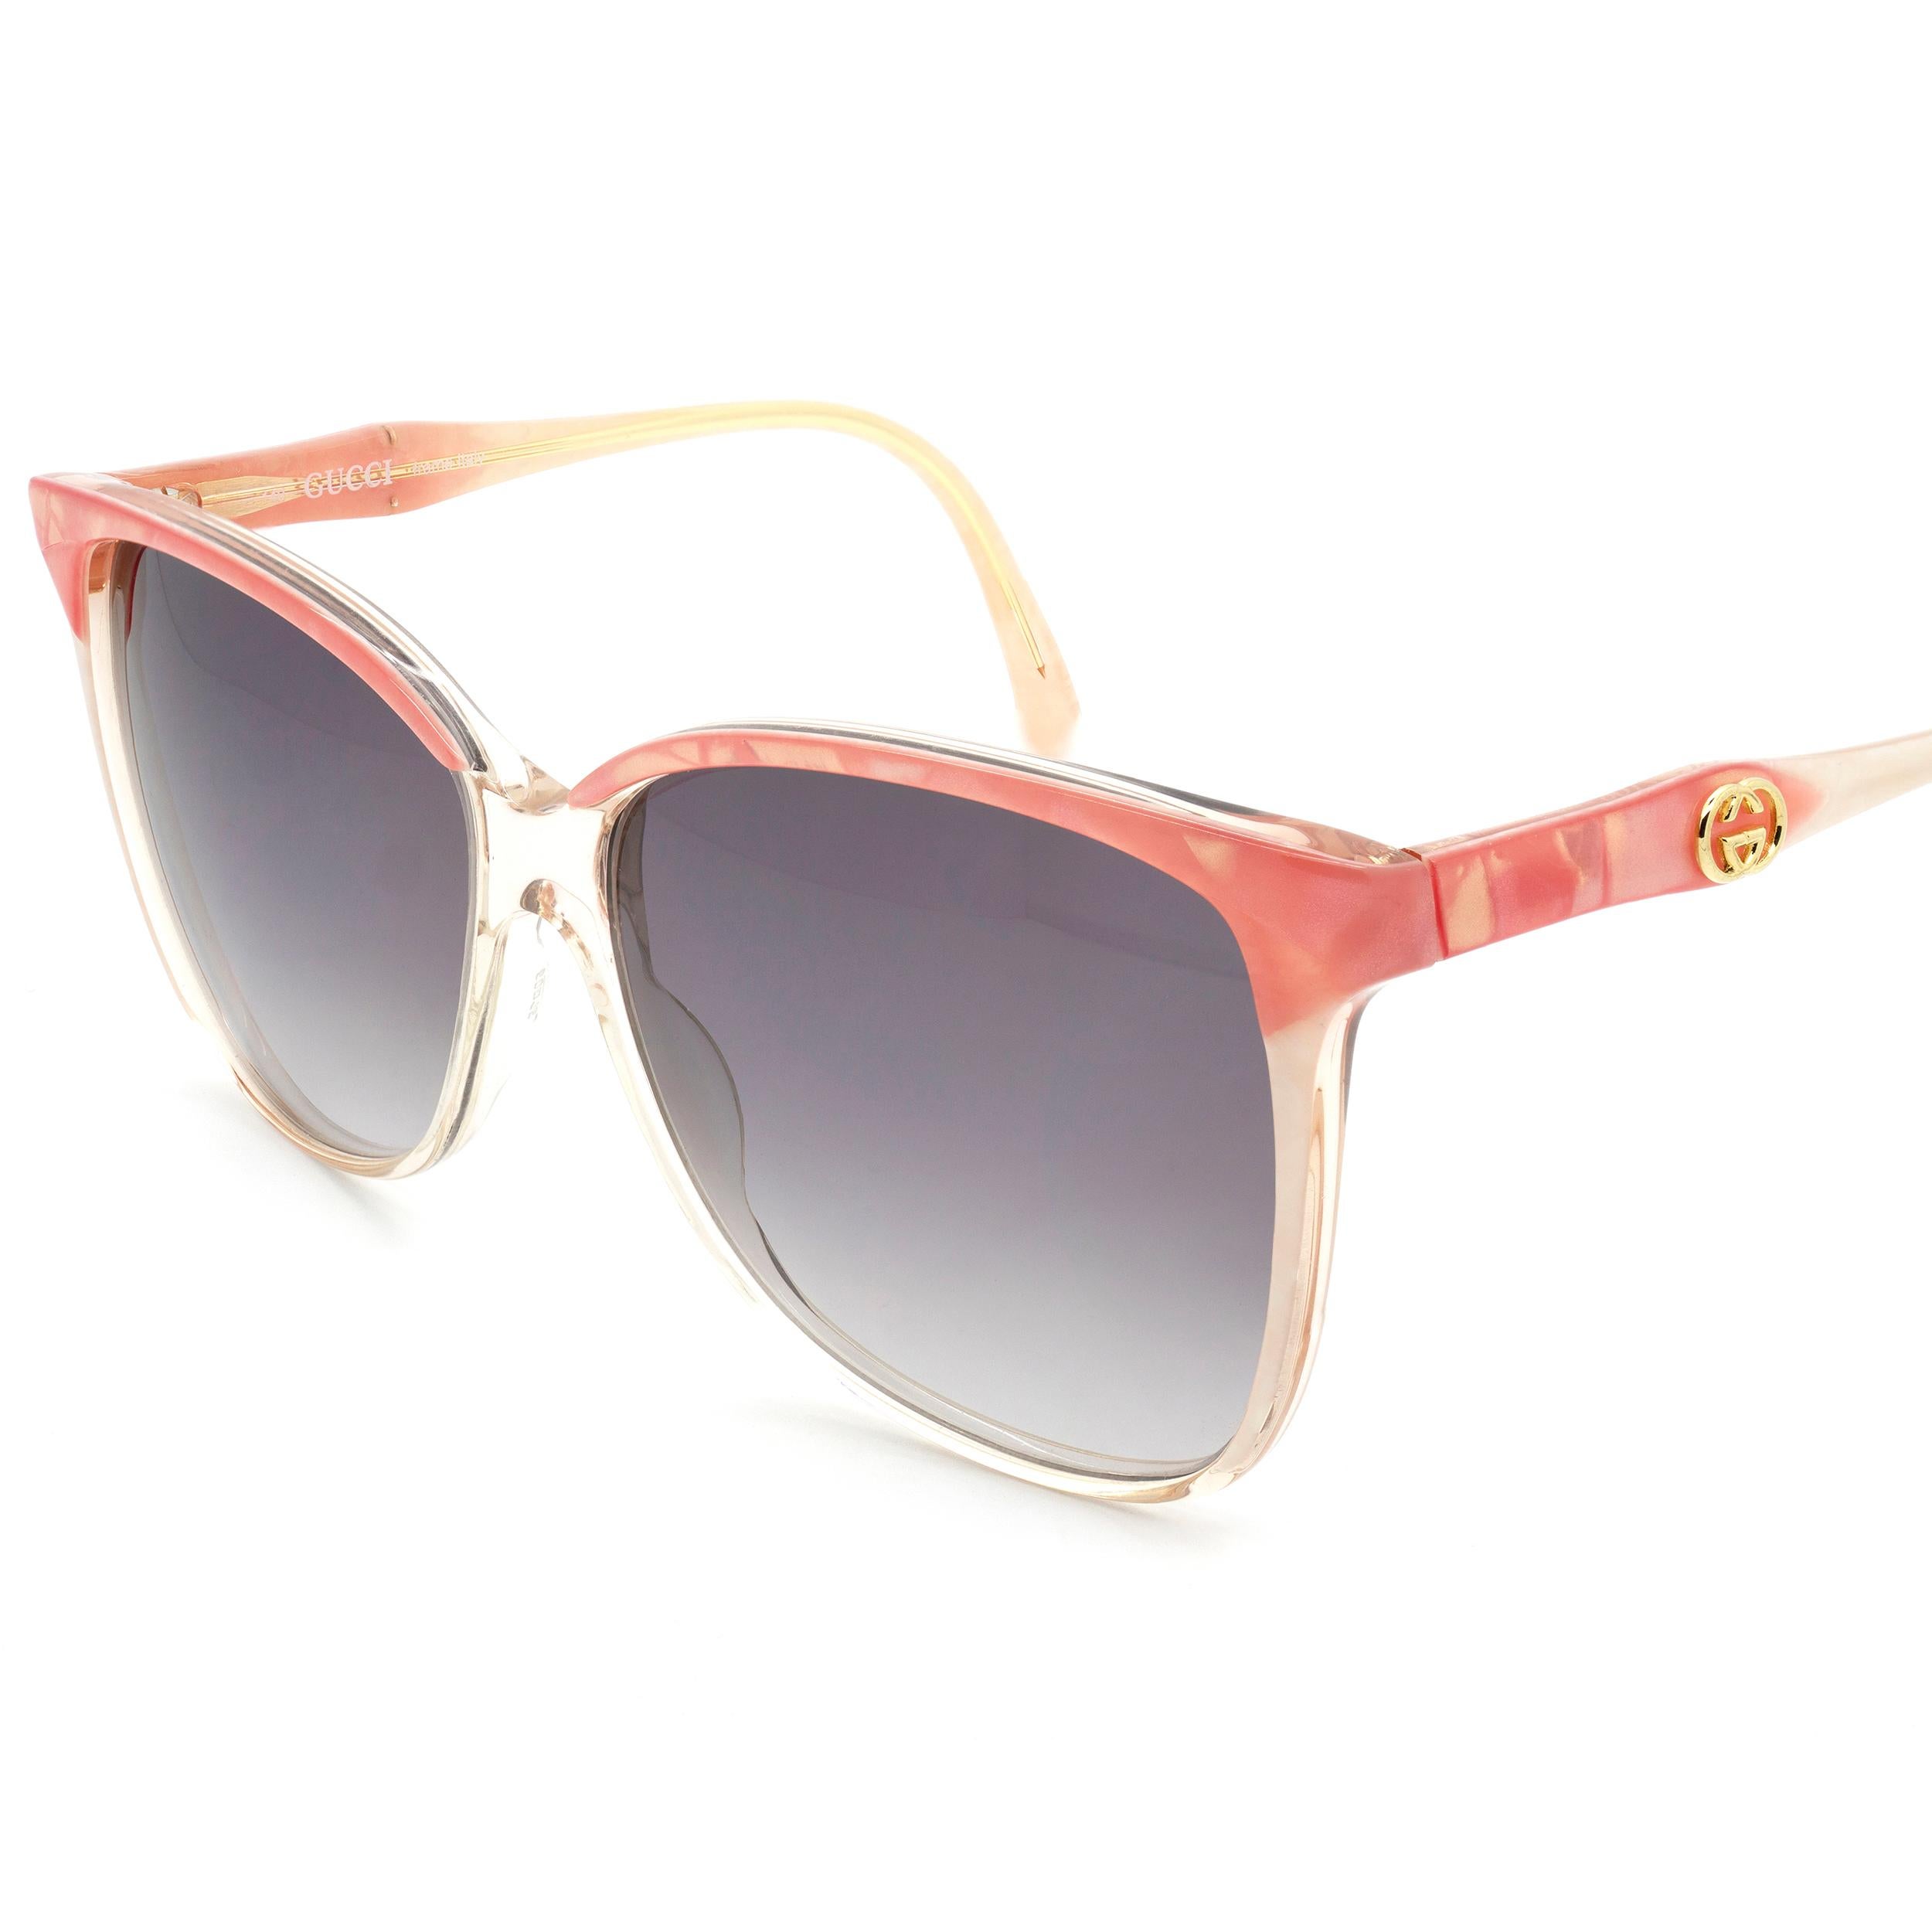 gucci sunglasses 70s style